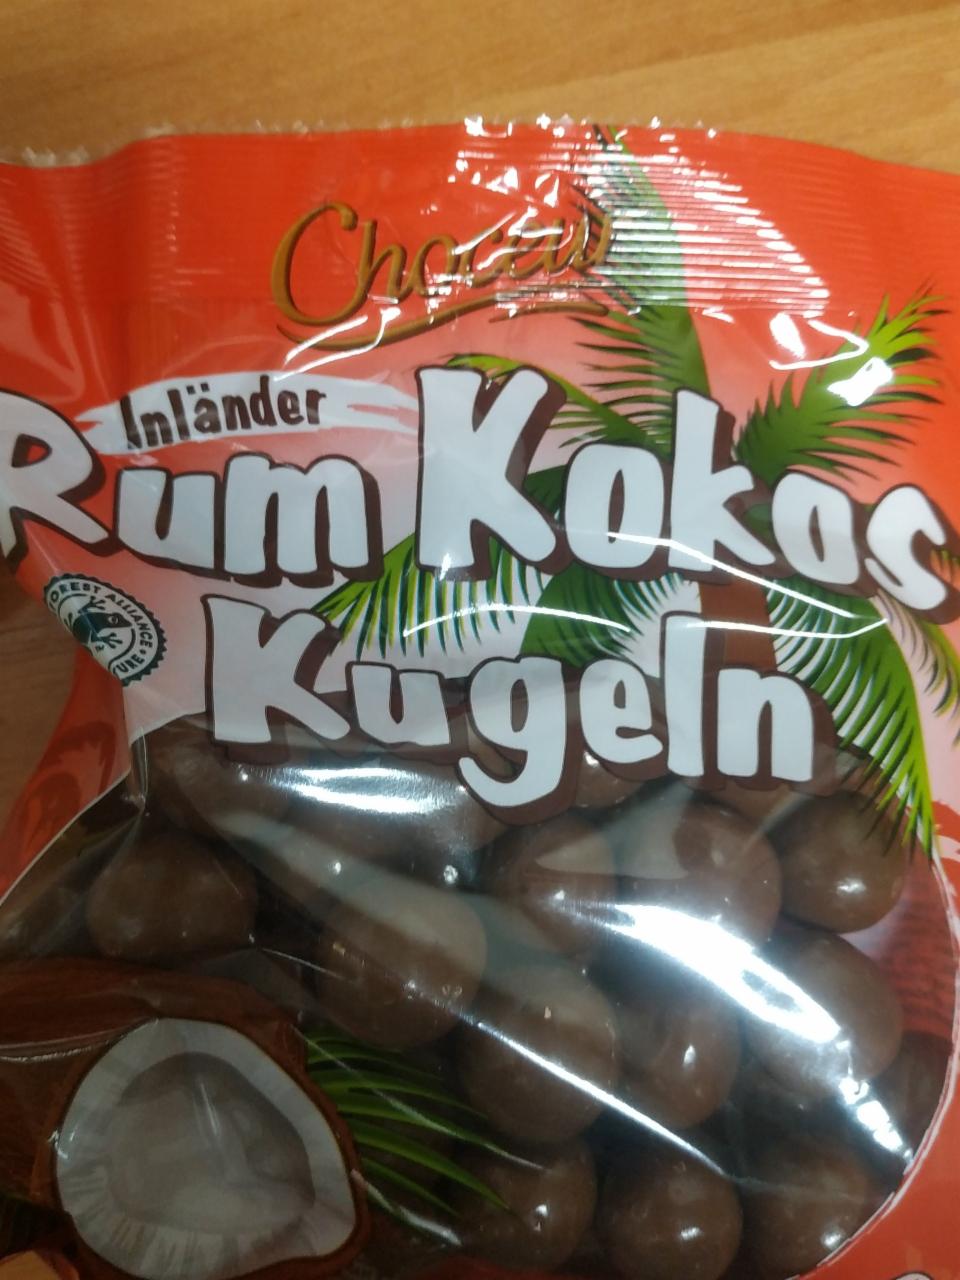 Фото - шоколадные шарики ром кокос Choceur